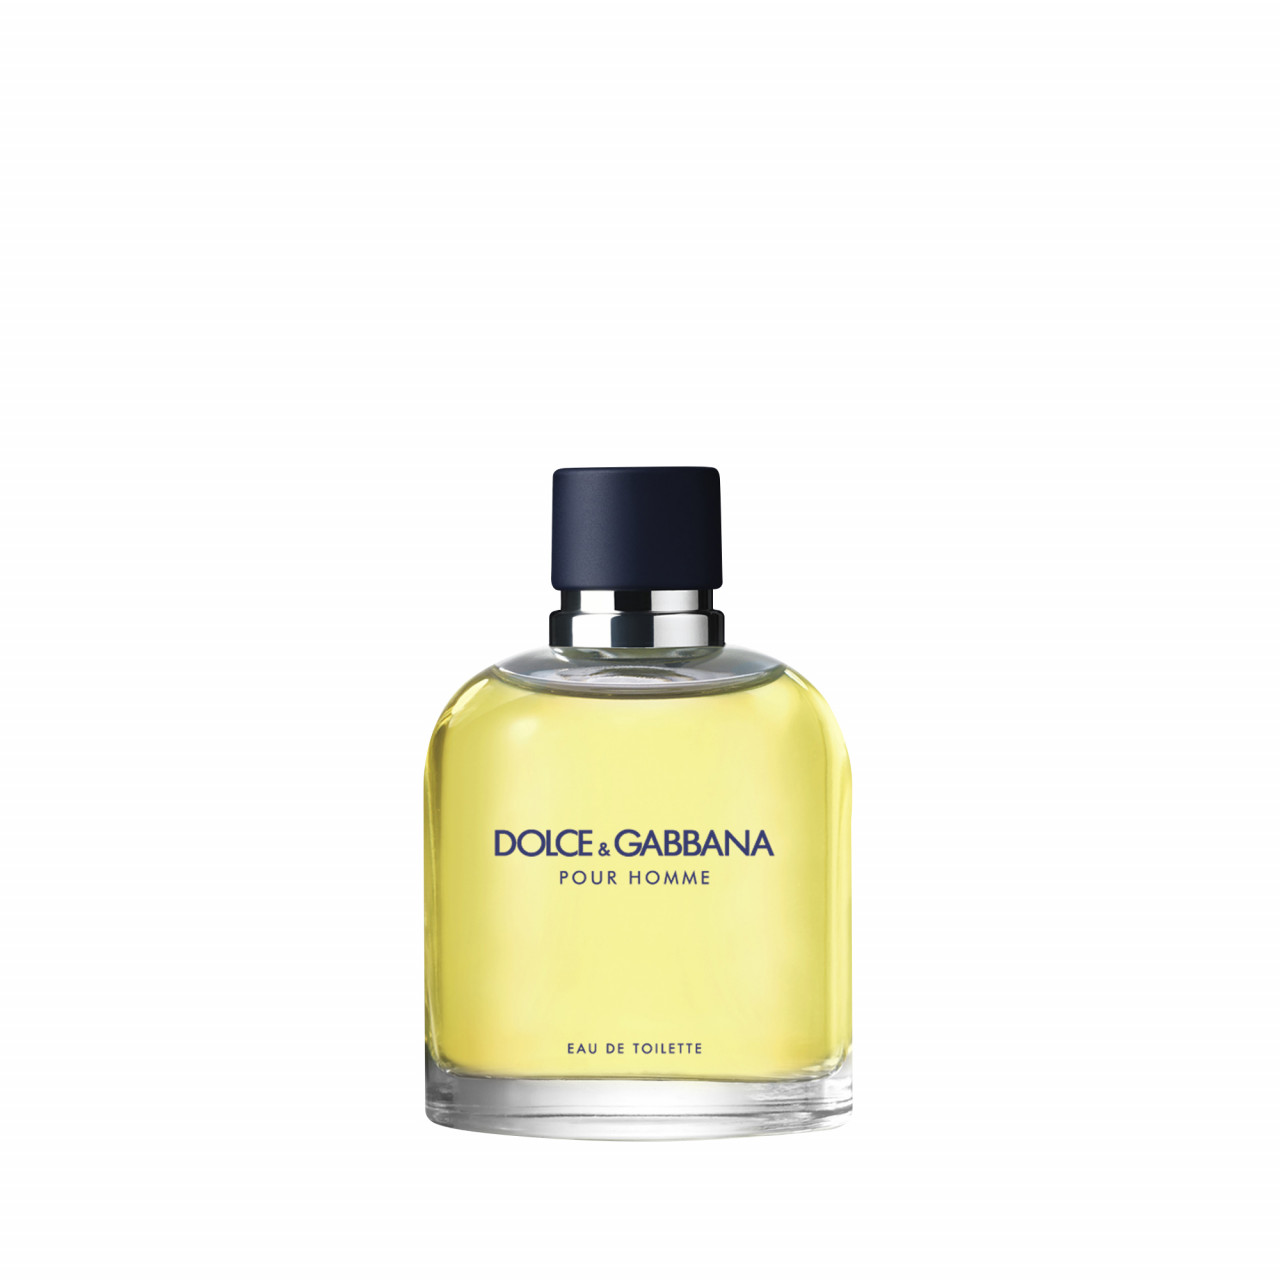 Dolce&Gabbana - Pour Homme Eau de Toilette -  75 ml